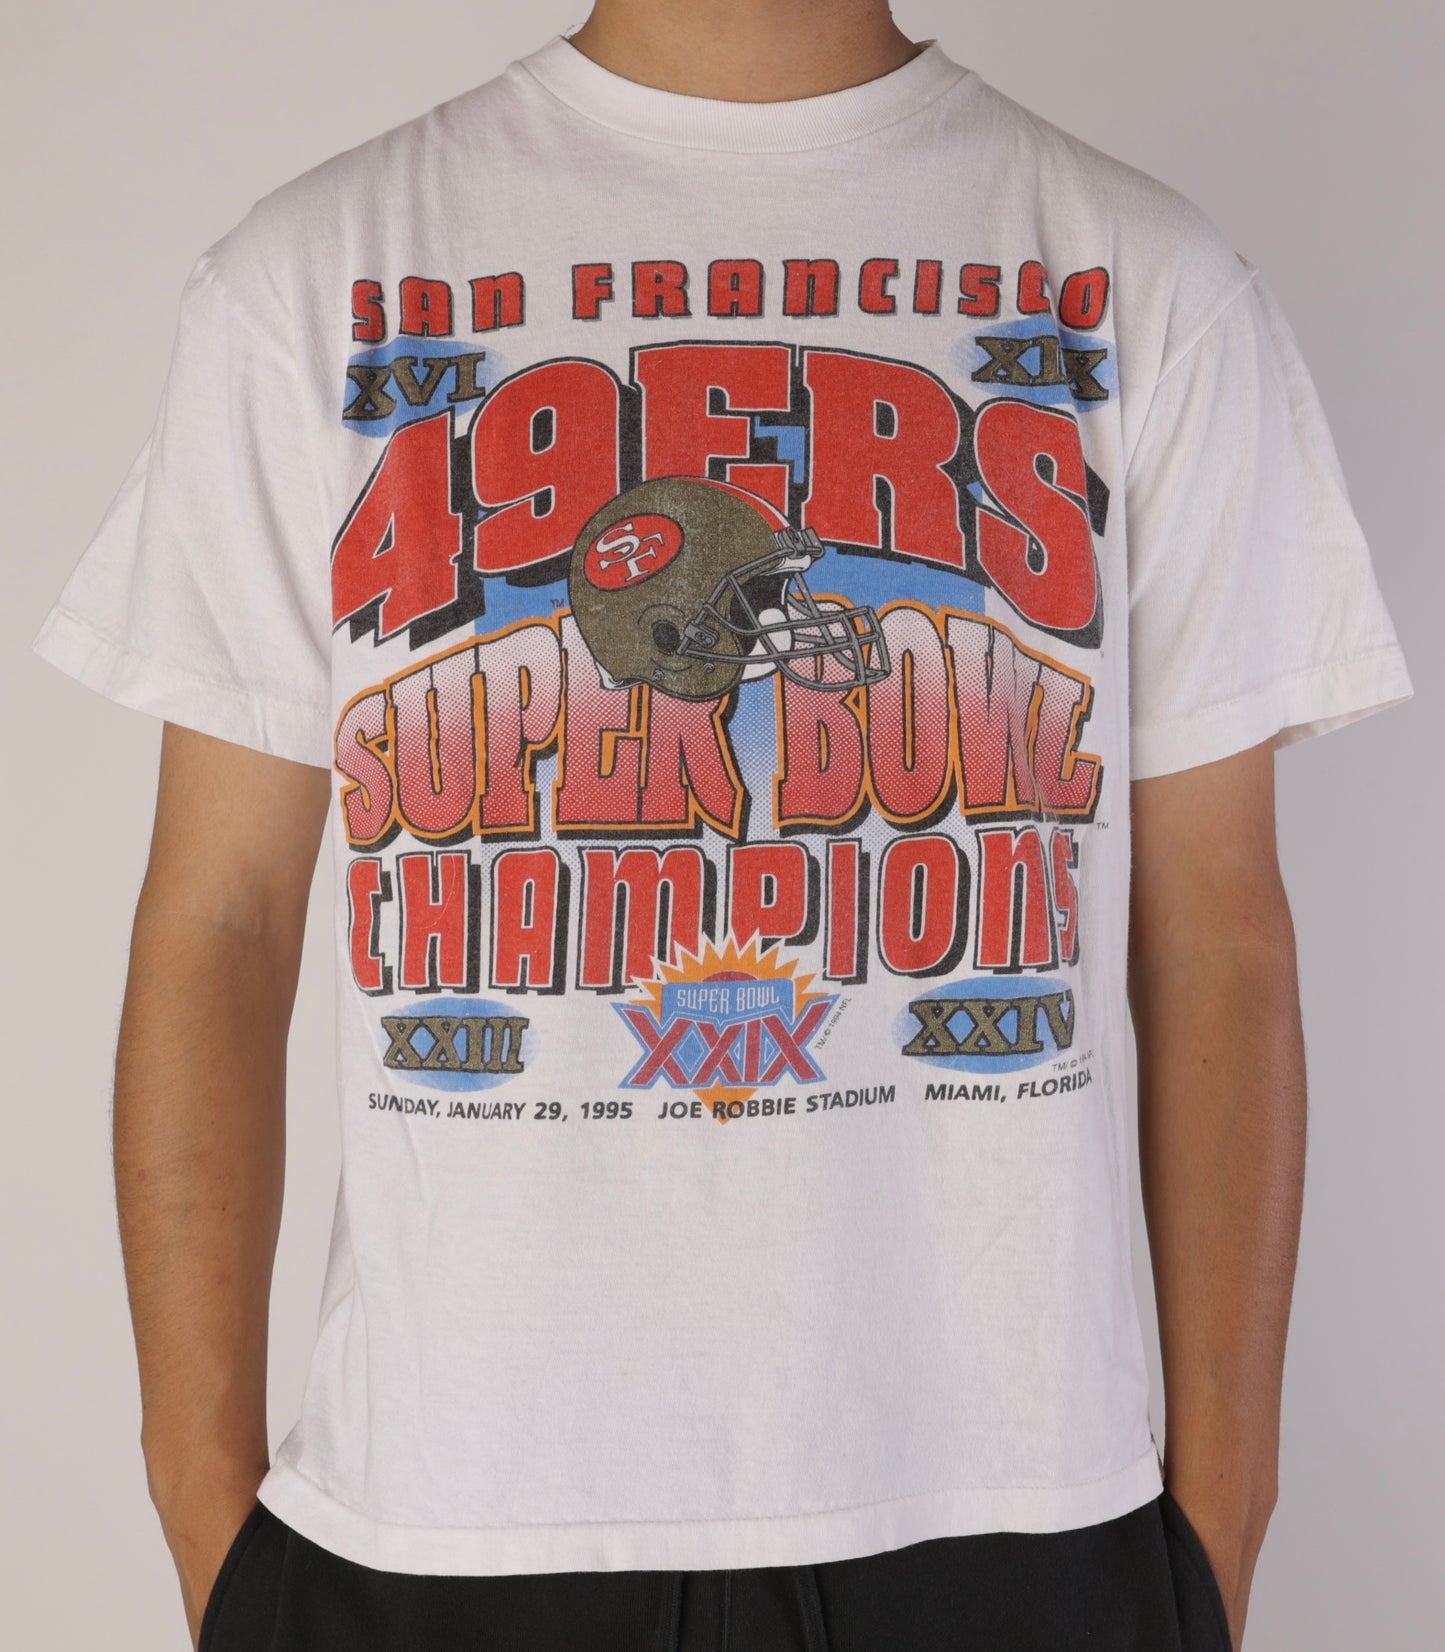 SS 1994 San Fransisco 49ers T-Shirt Size L